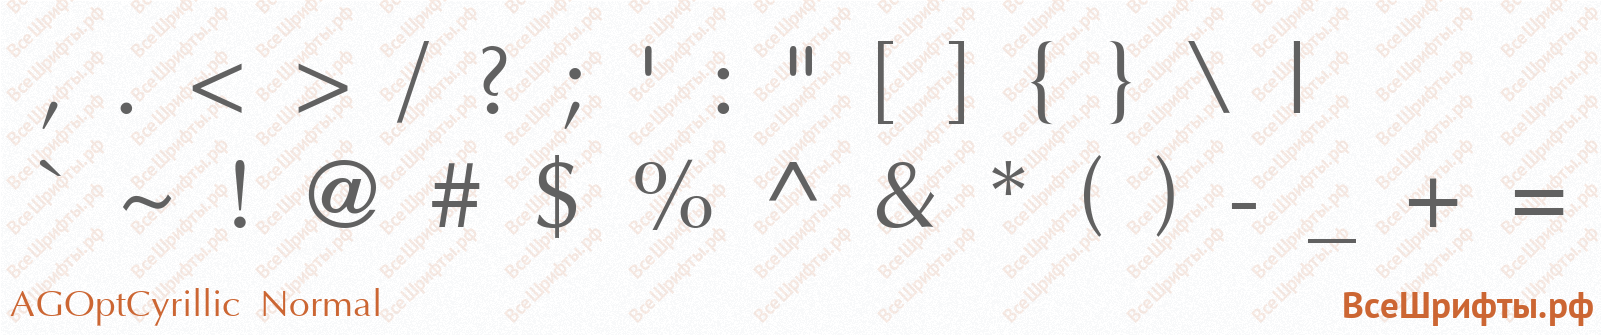 Шрифт AGOptCyrillic Normal со знаками препинания и пунктуации